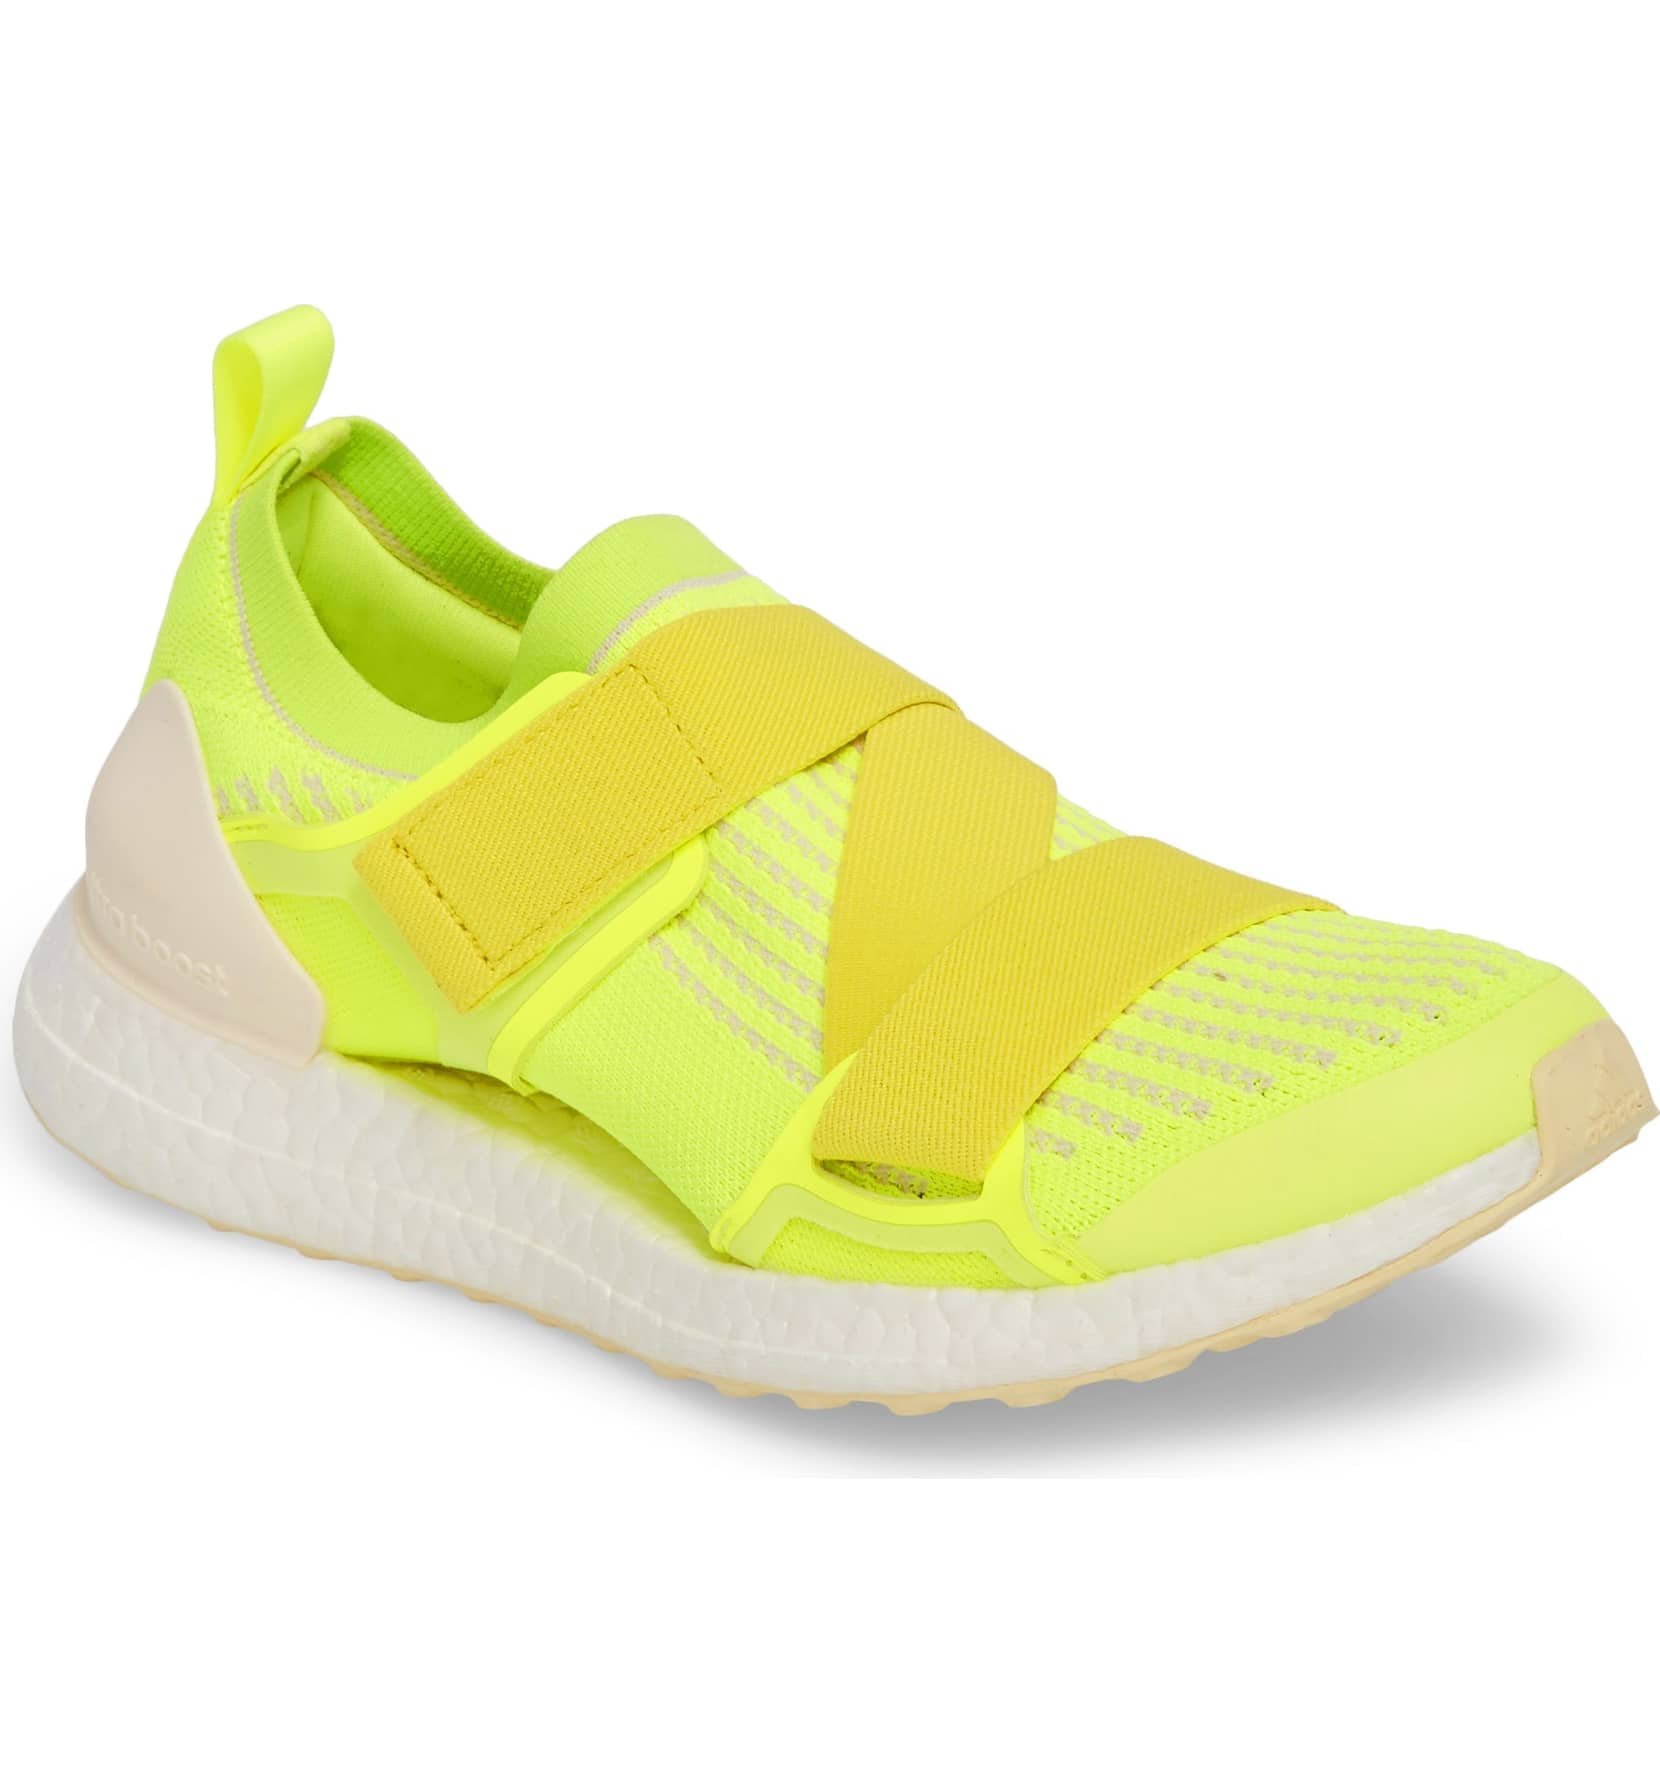 ultraboost x running shoe